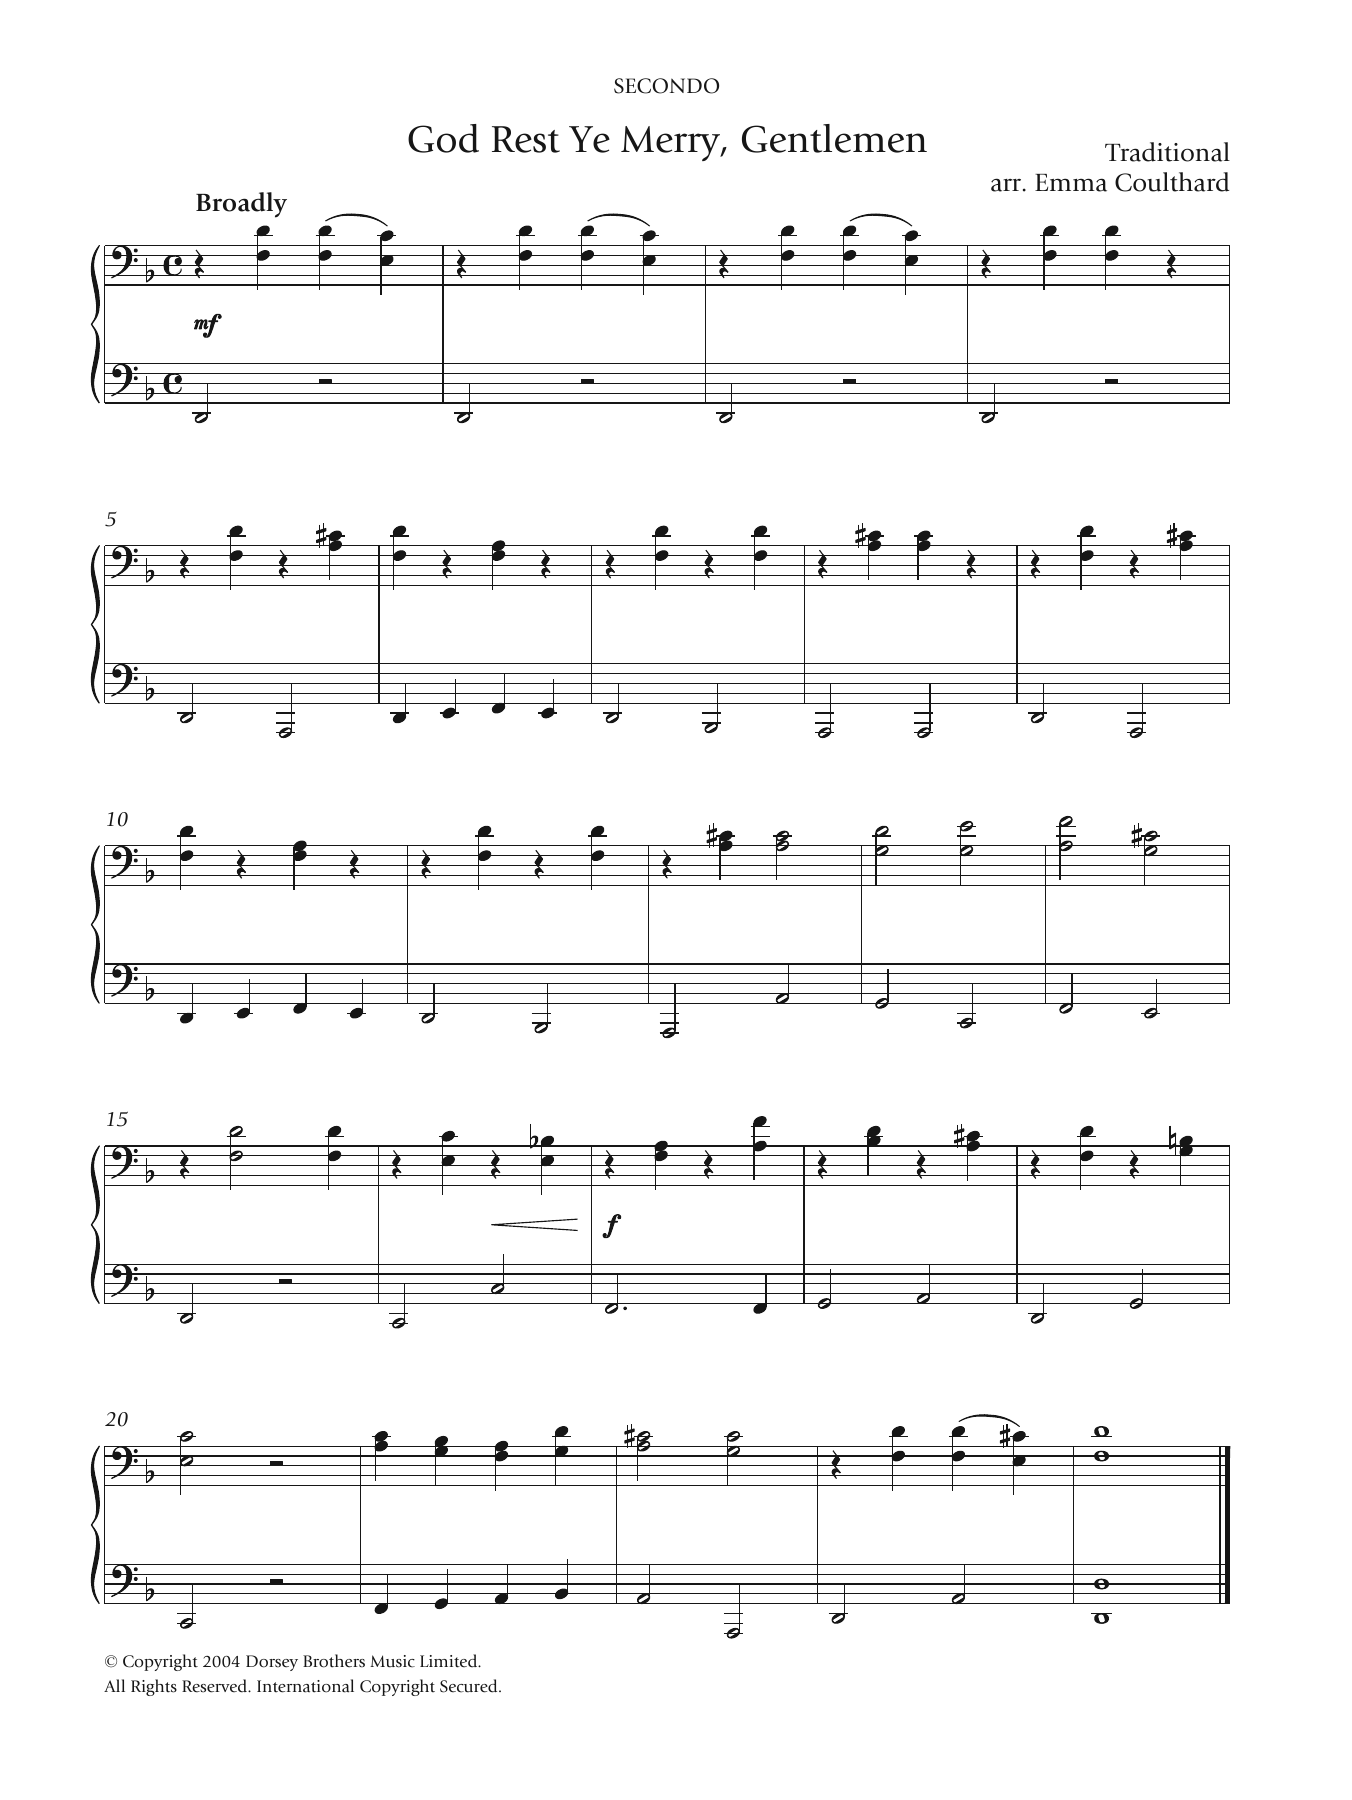 Christmas Carol God Rest Ye Merry, Gentlemen sheet music notes and chords arranged for Trombone Transcription